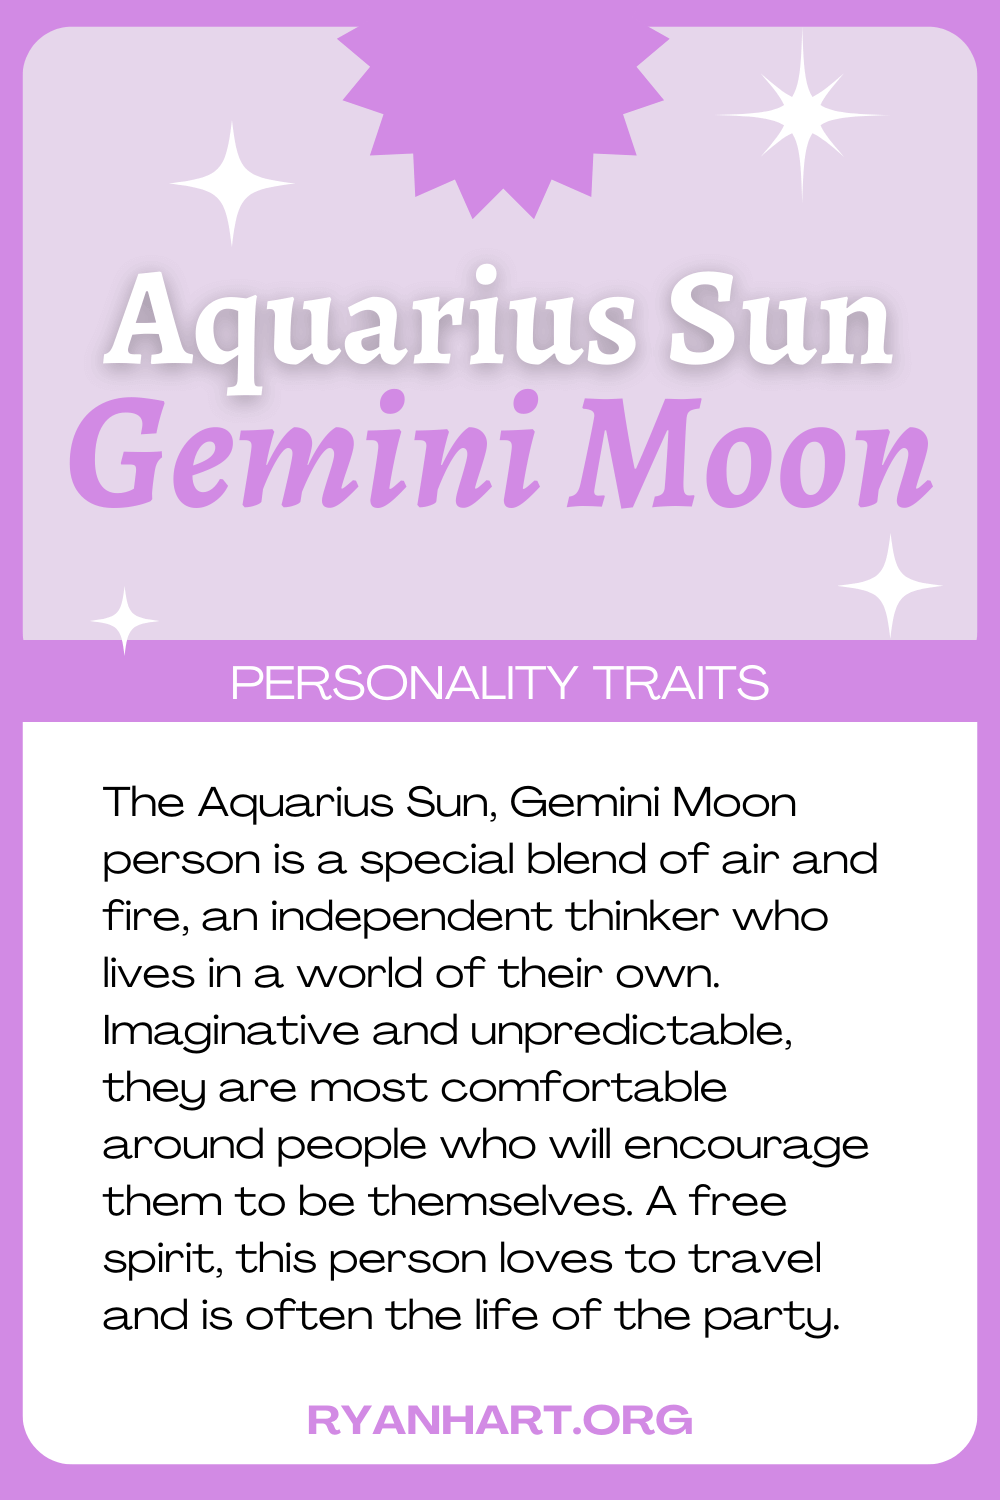 Aquarius Sun Gemini Moon Description